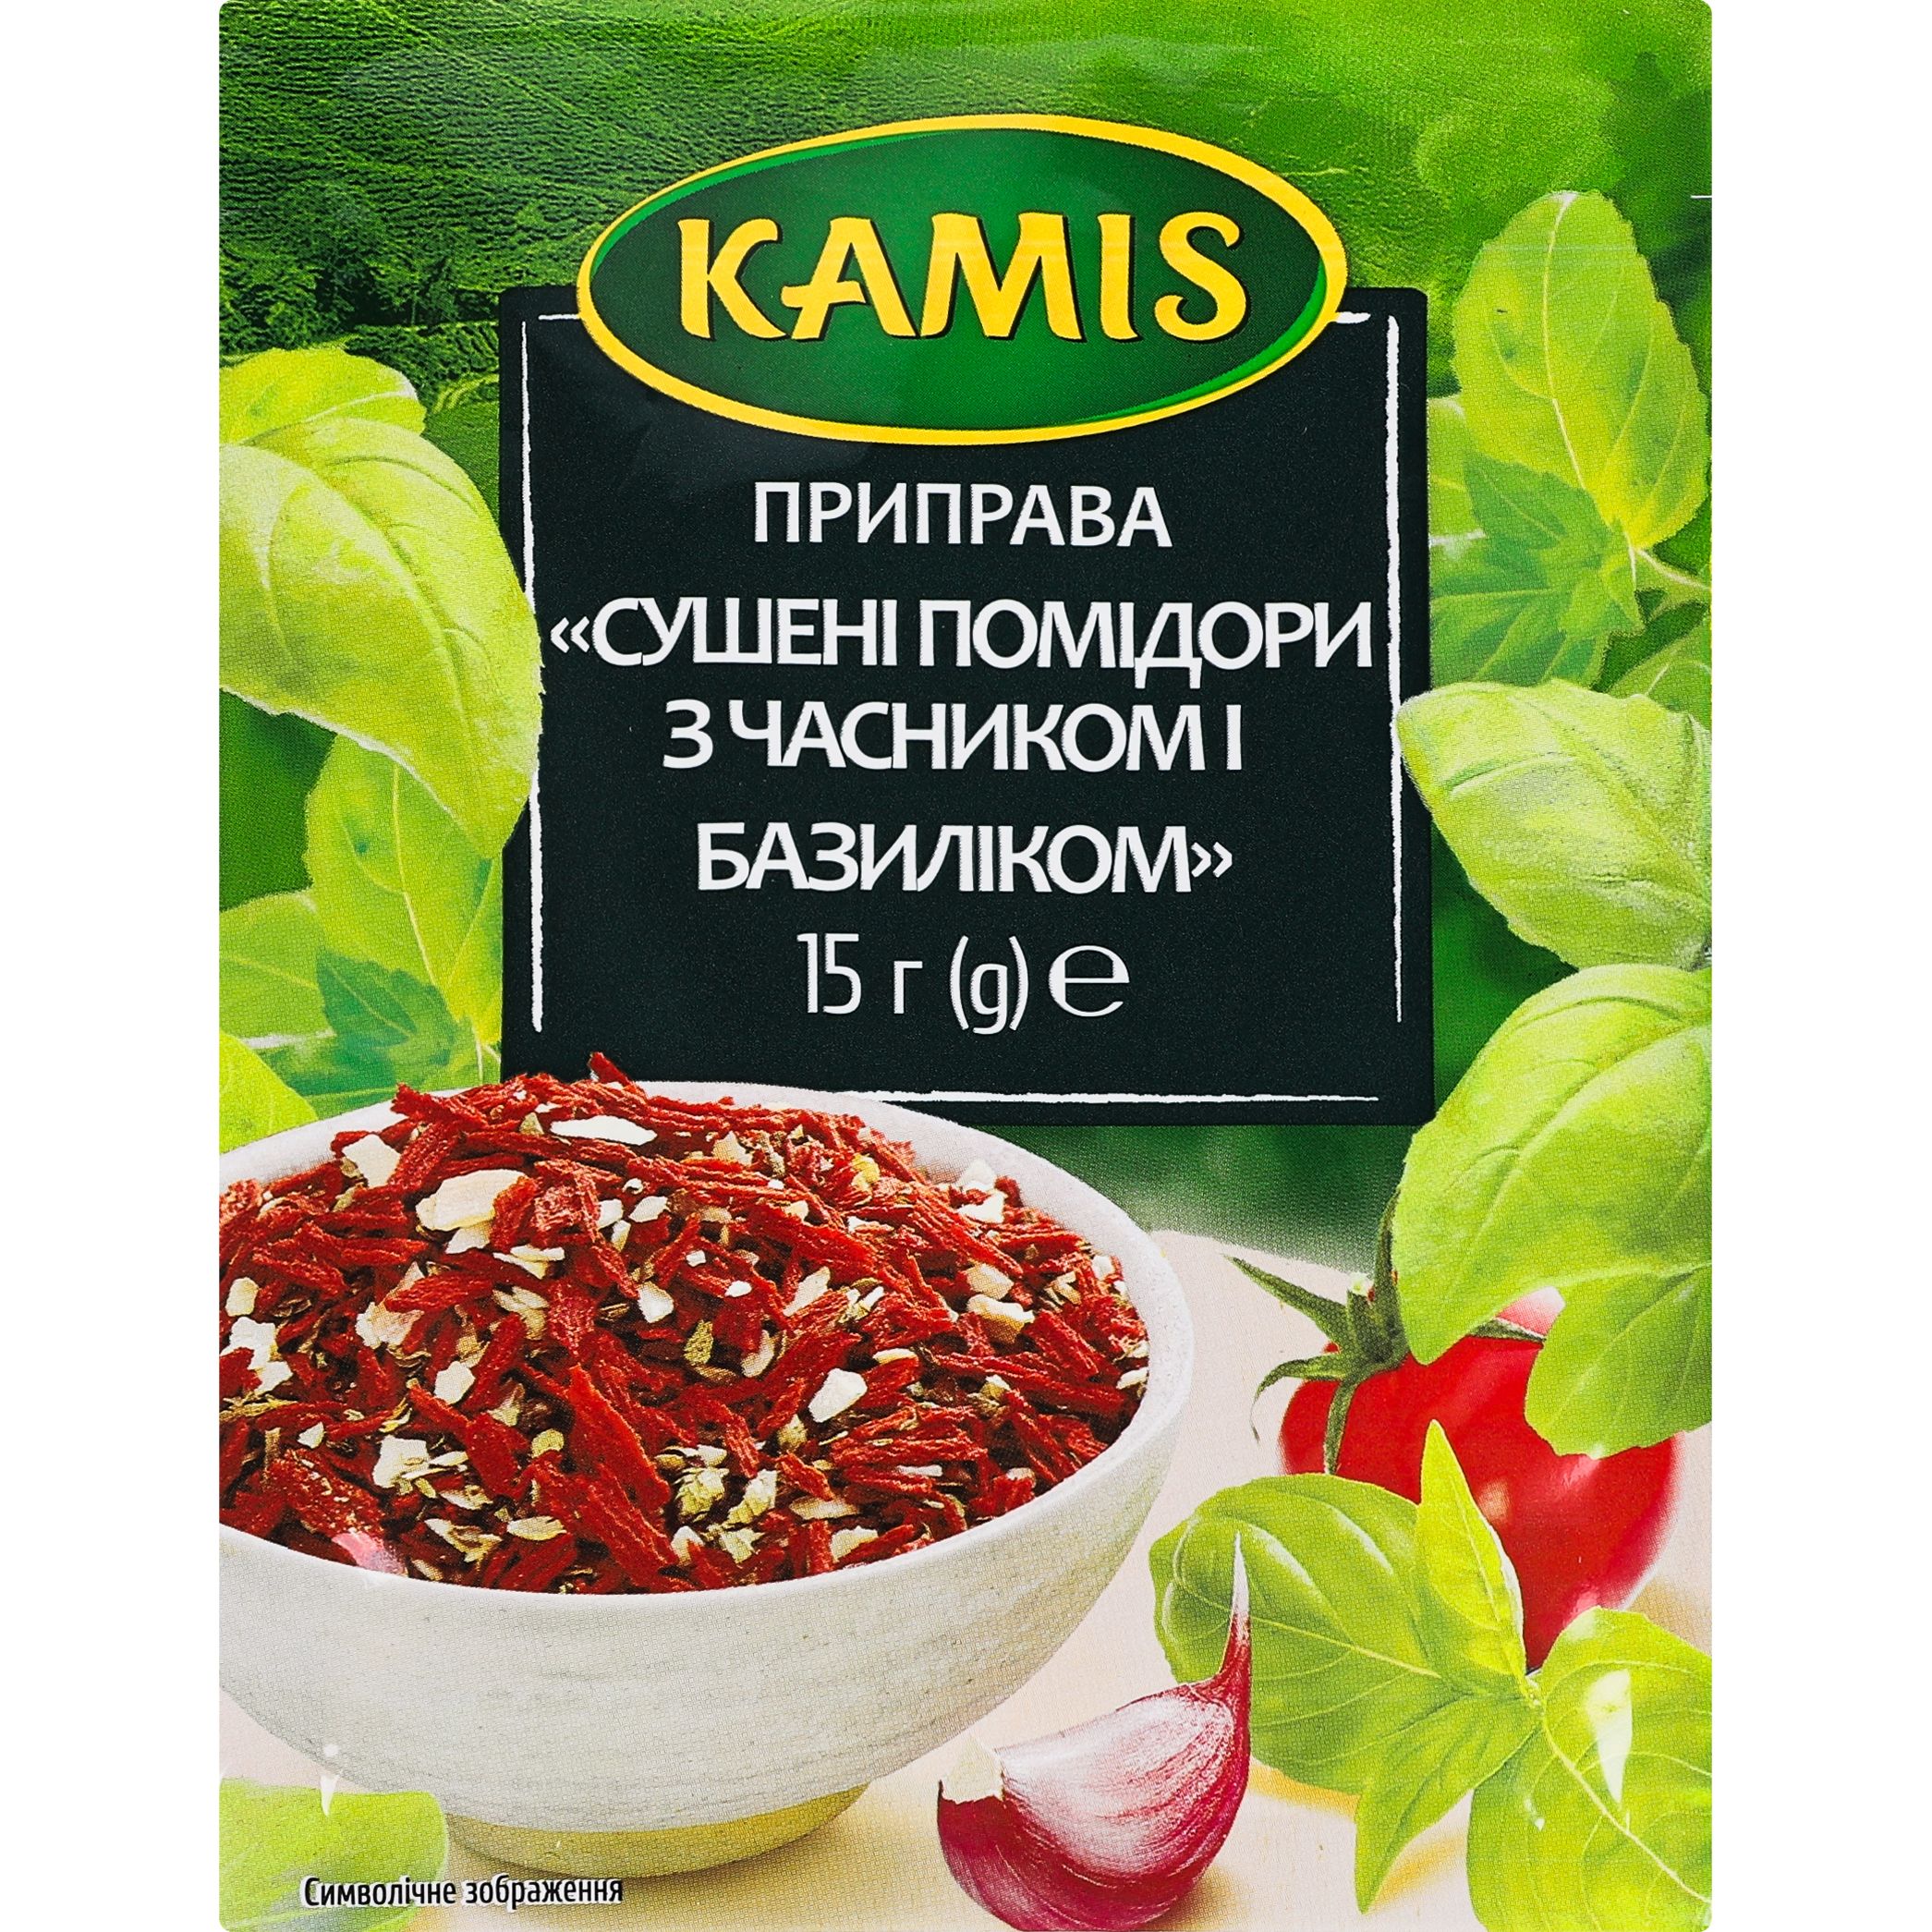 Приправа Kamis помідори сушені з часником і базиліком, 15 г (746961) - фото 1